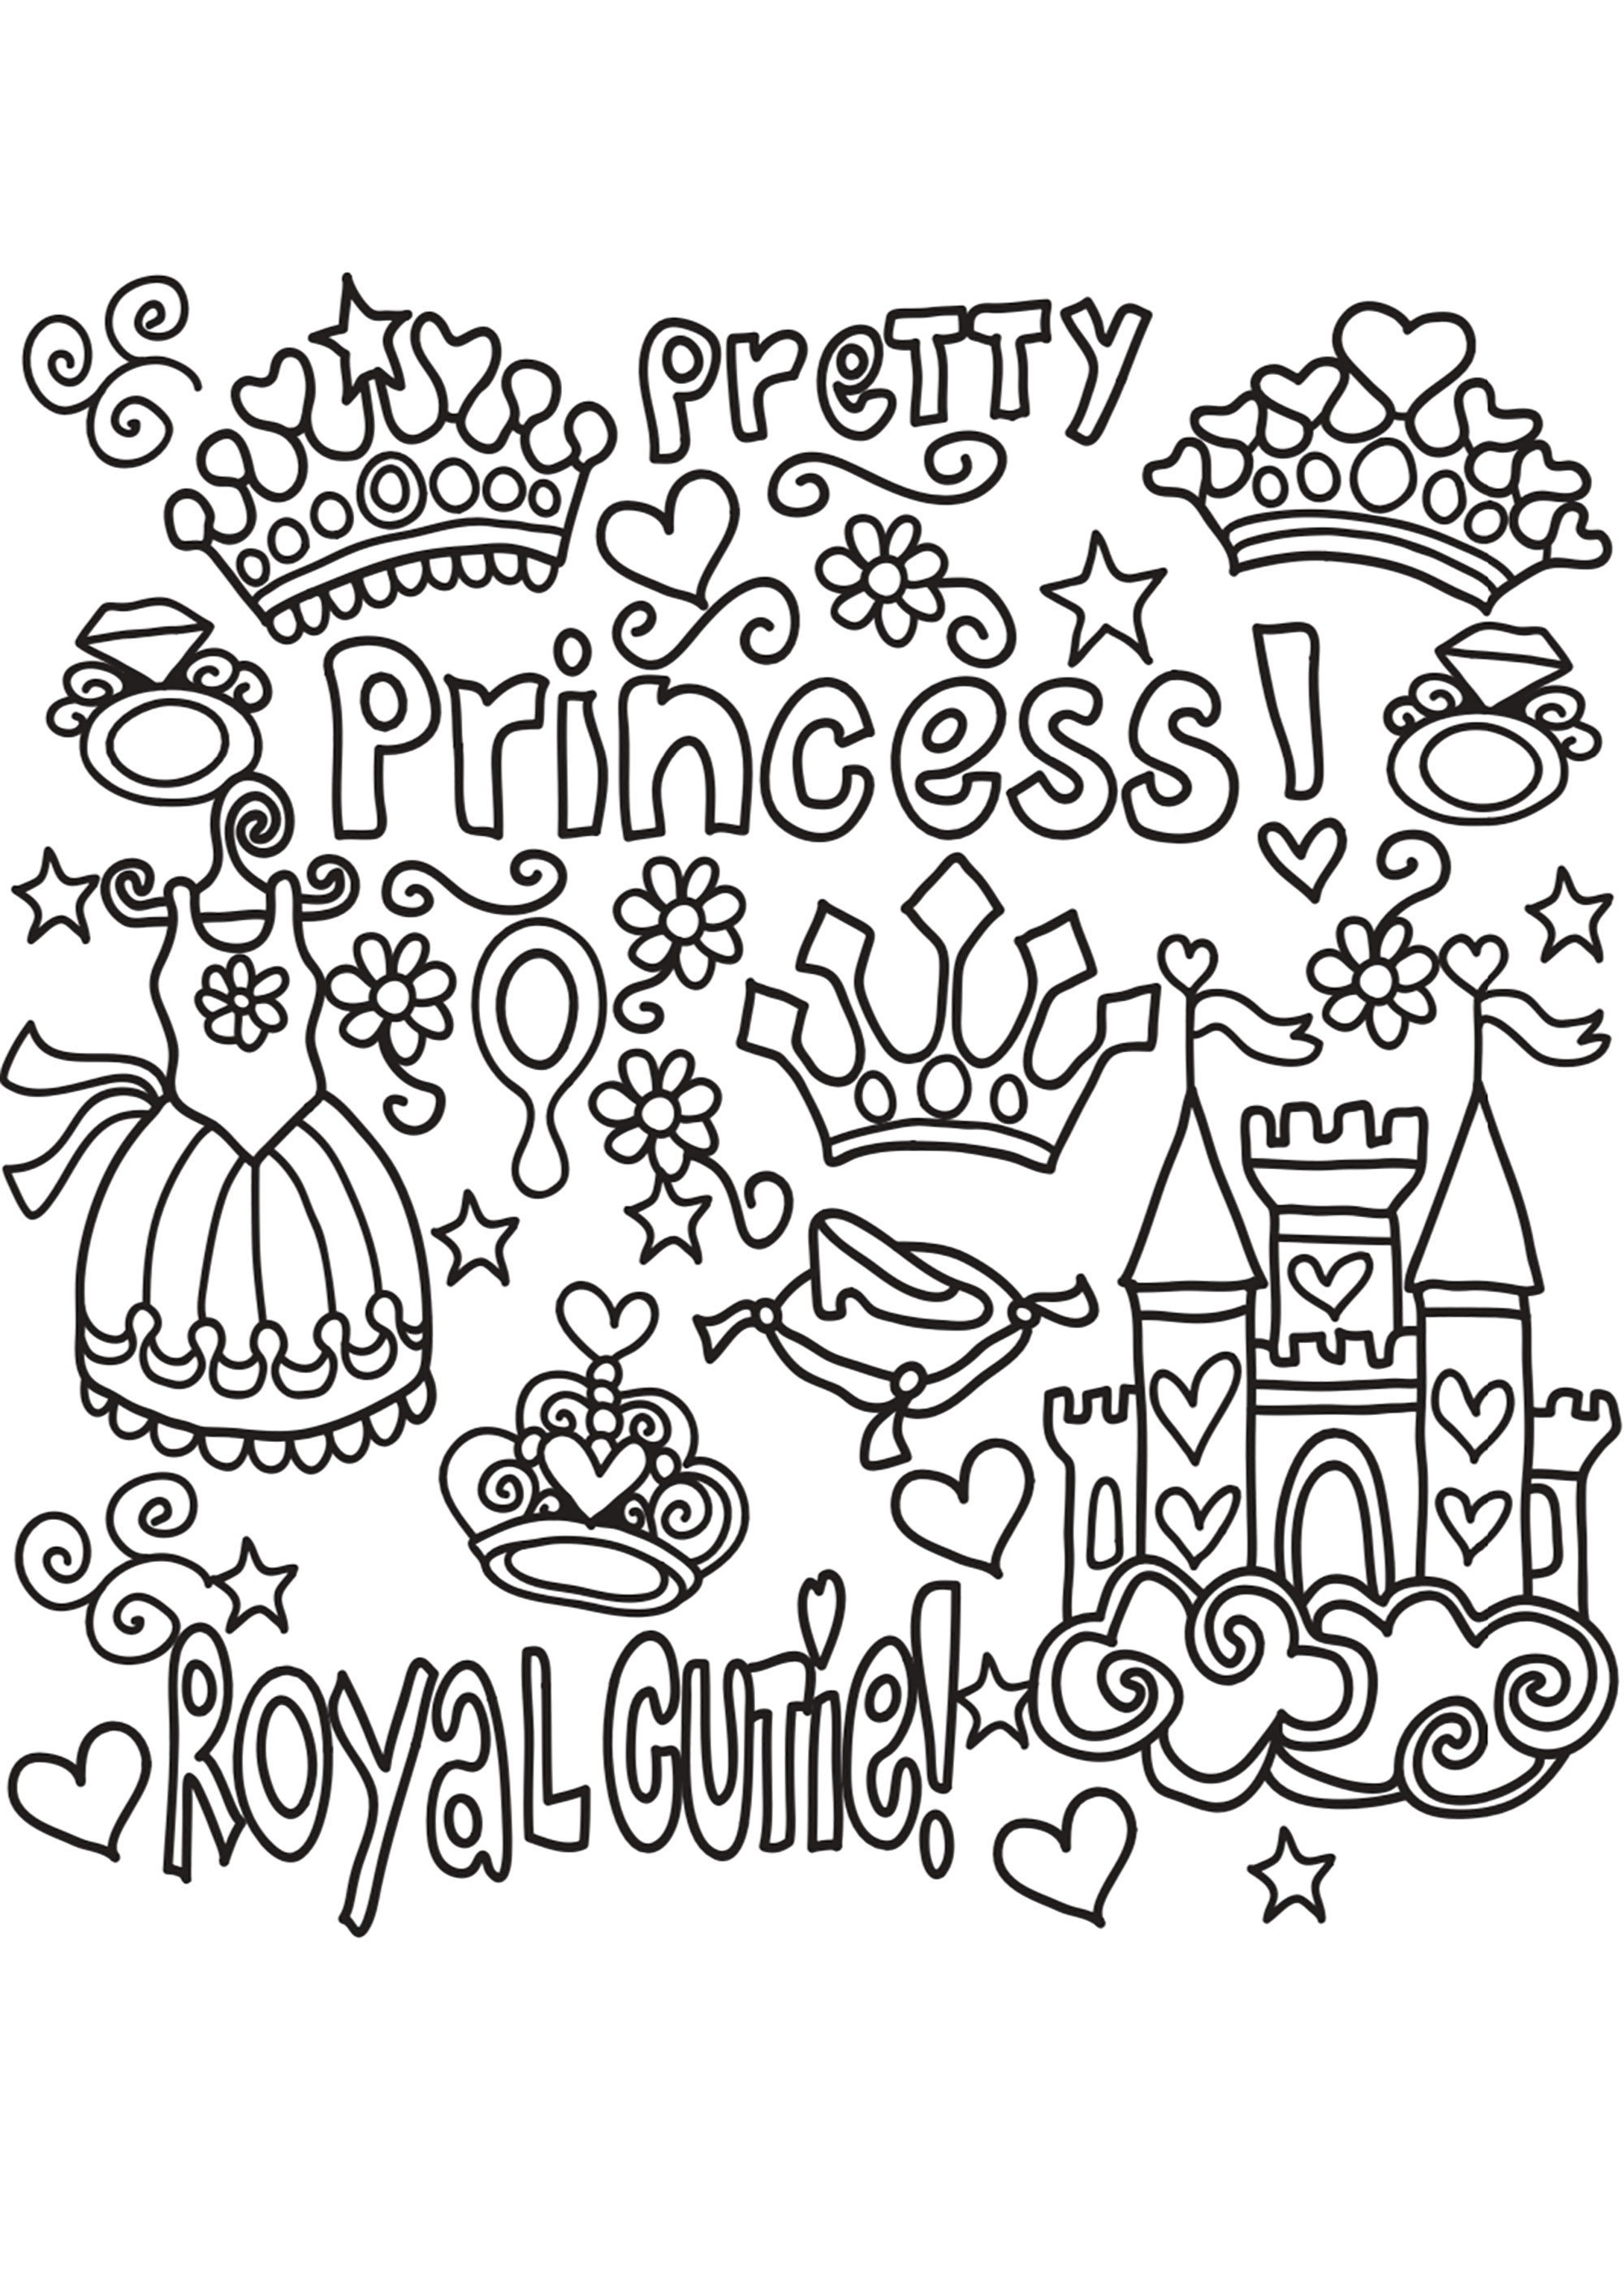 Un bonito garabato de princesa. Un vestido de princesa, una tiara, una corona, un castillo... y palabras bonitas... todo para llevarte a un reino encantado.